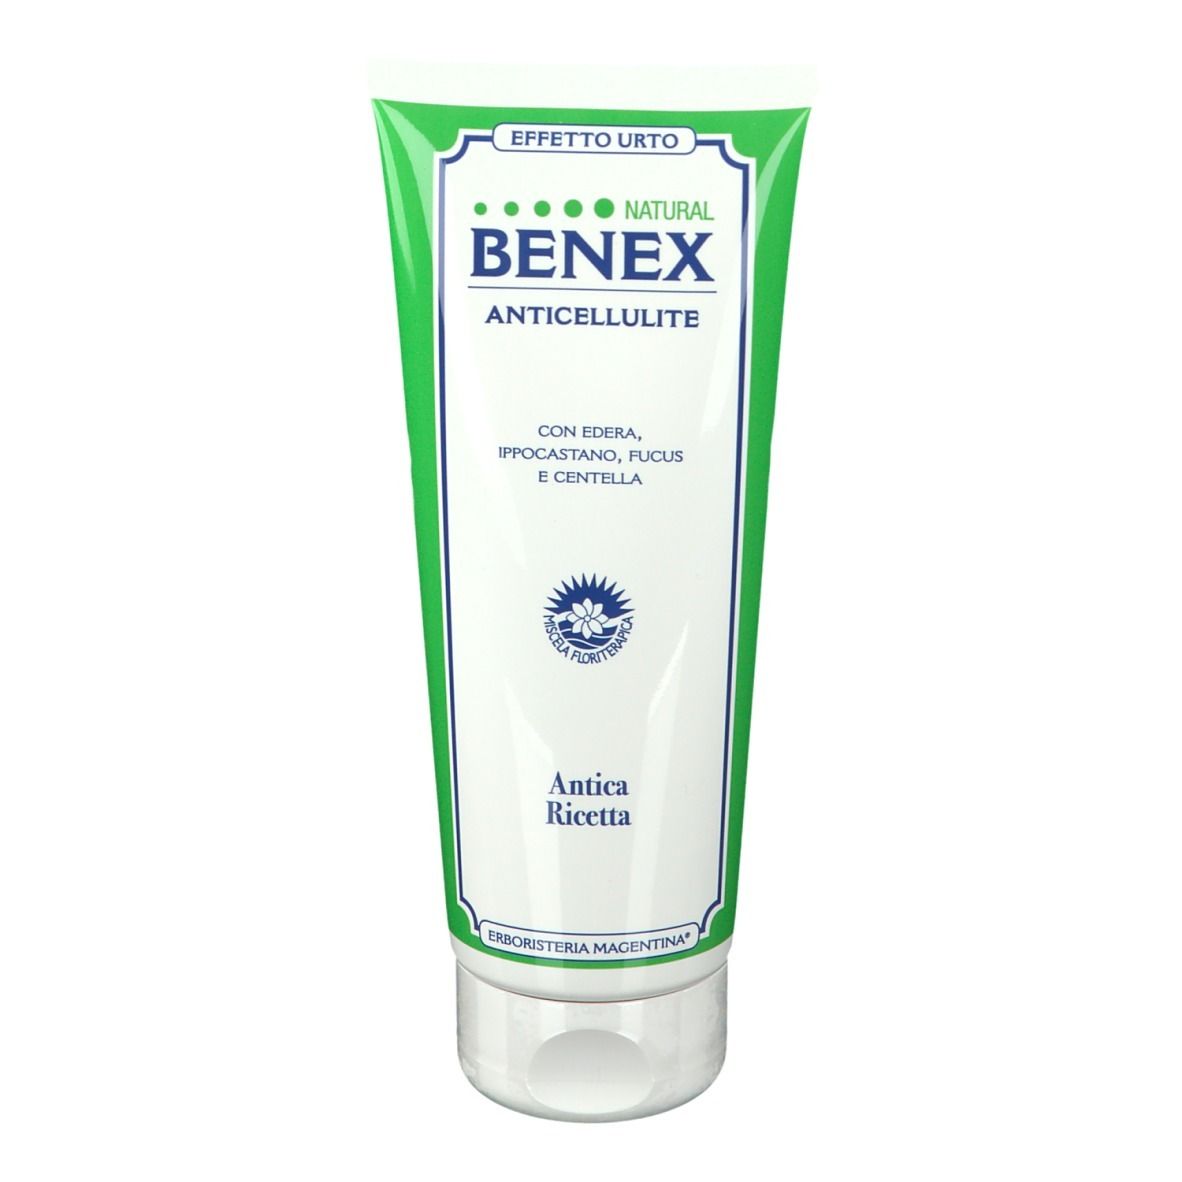 BENEX Natural Anticellulite